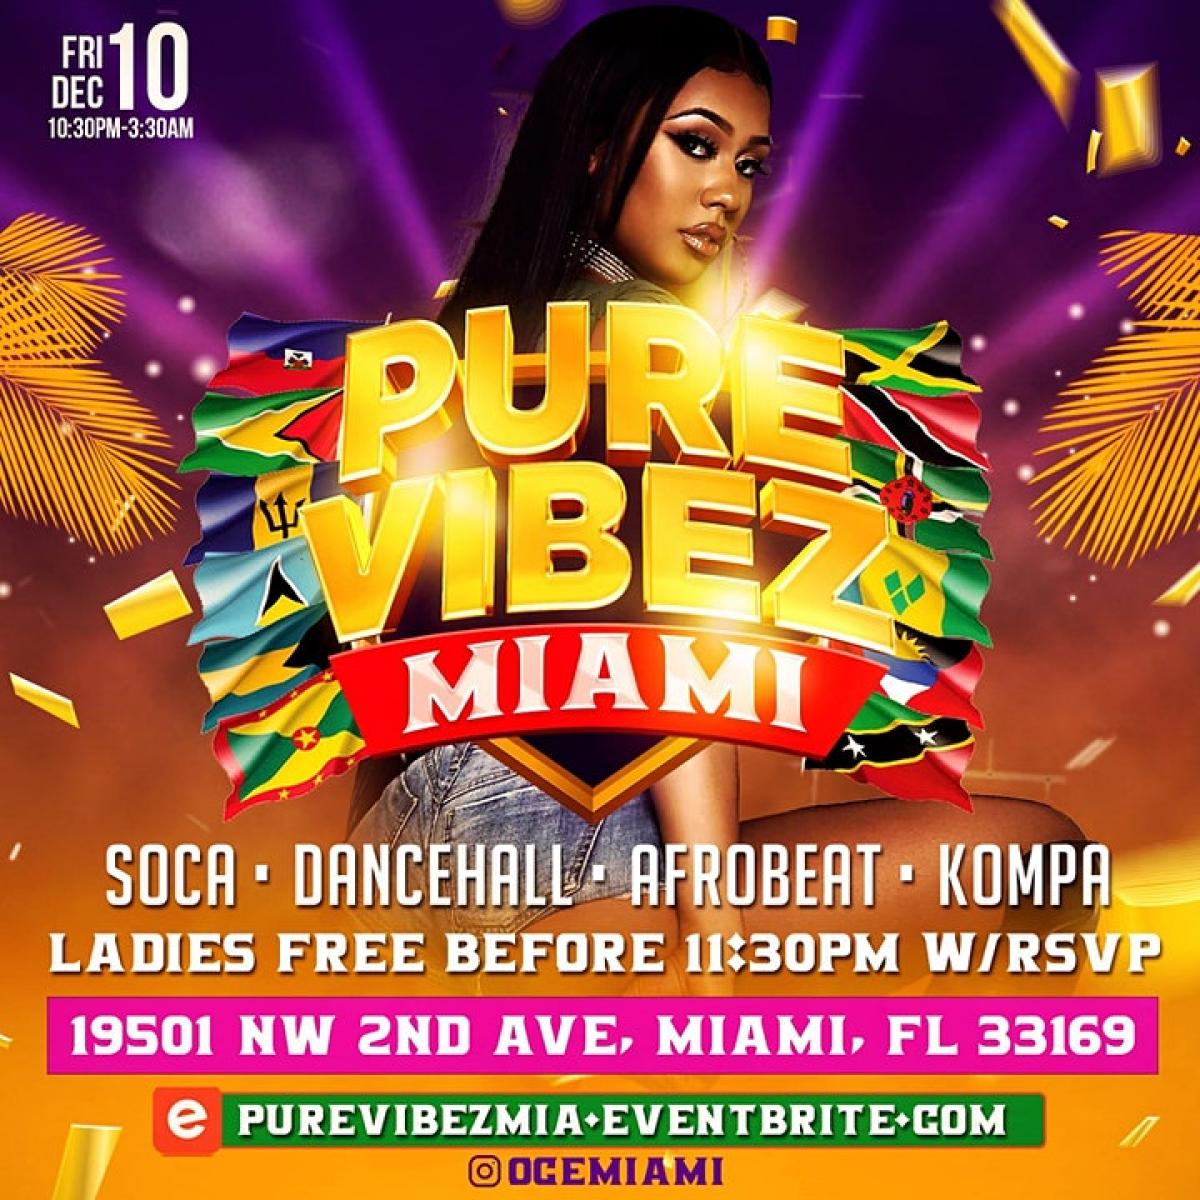 Pure Vibez Miami flyer or graphic.